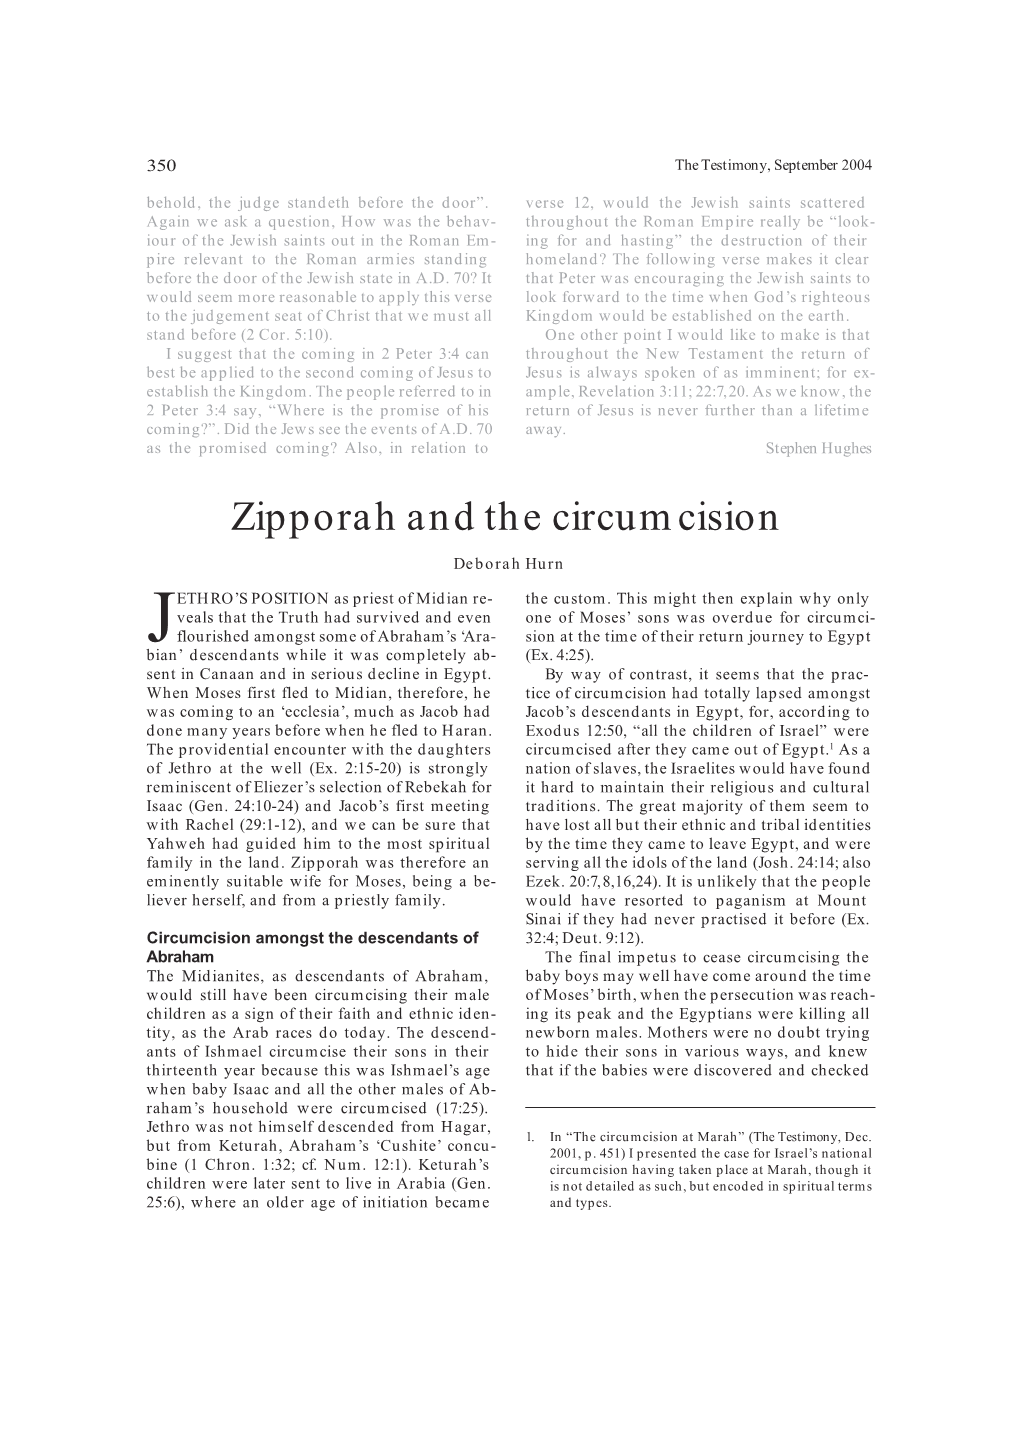 Zipporah and the Circumcision Deborah Hurn